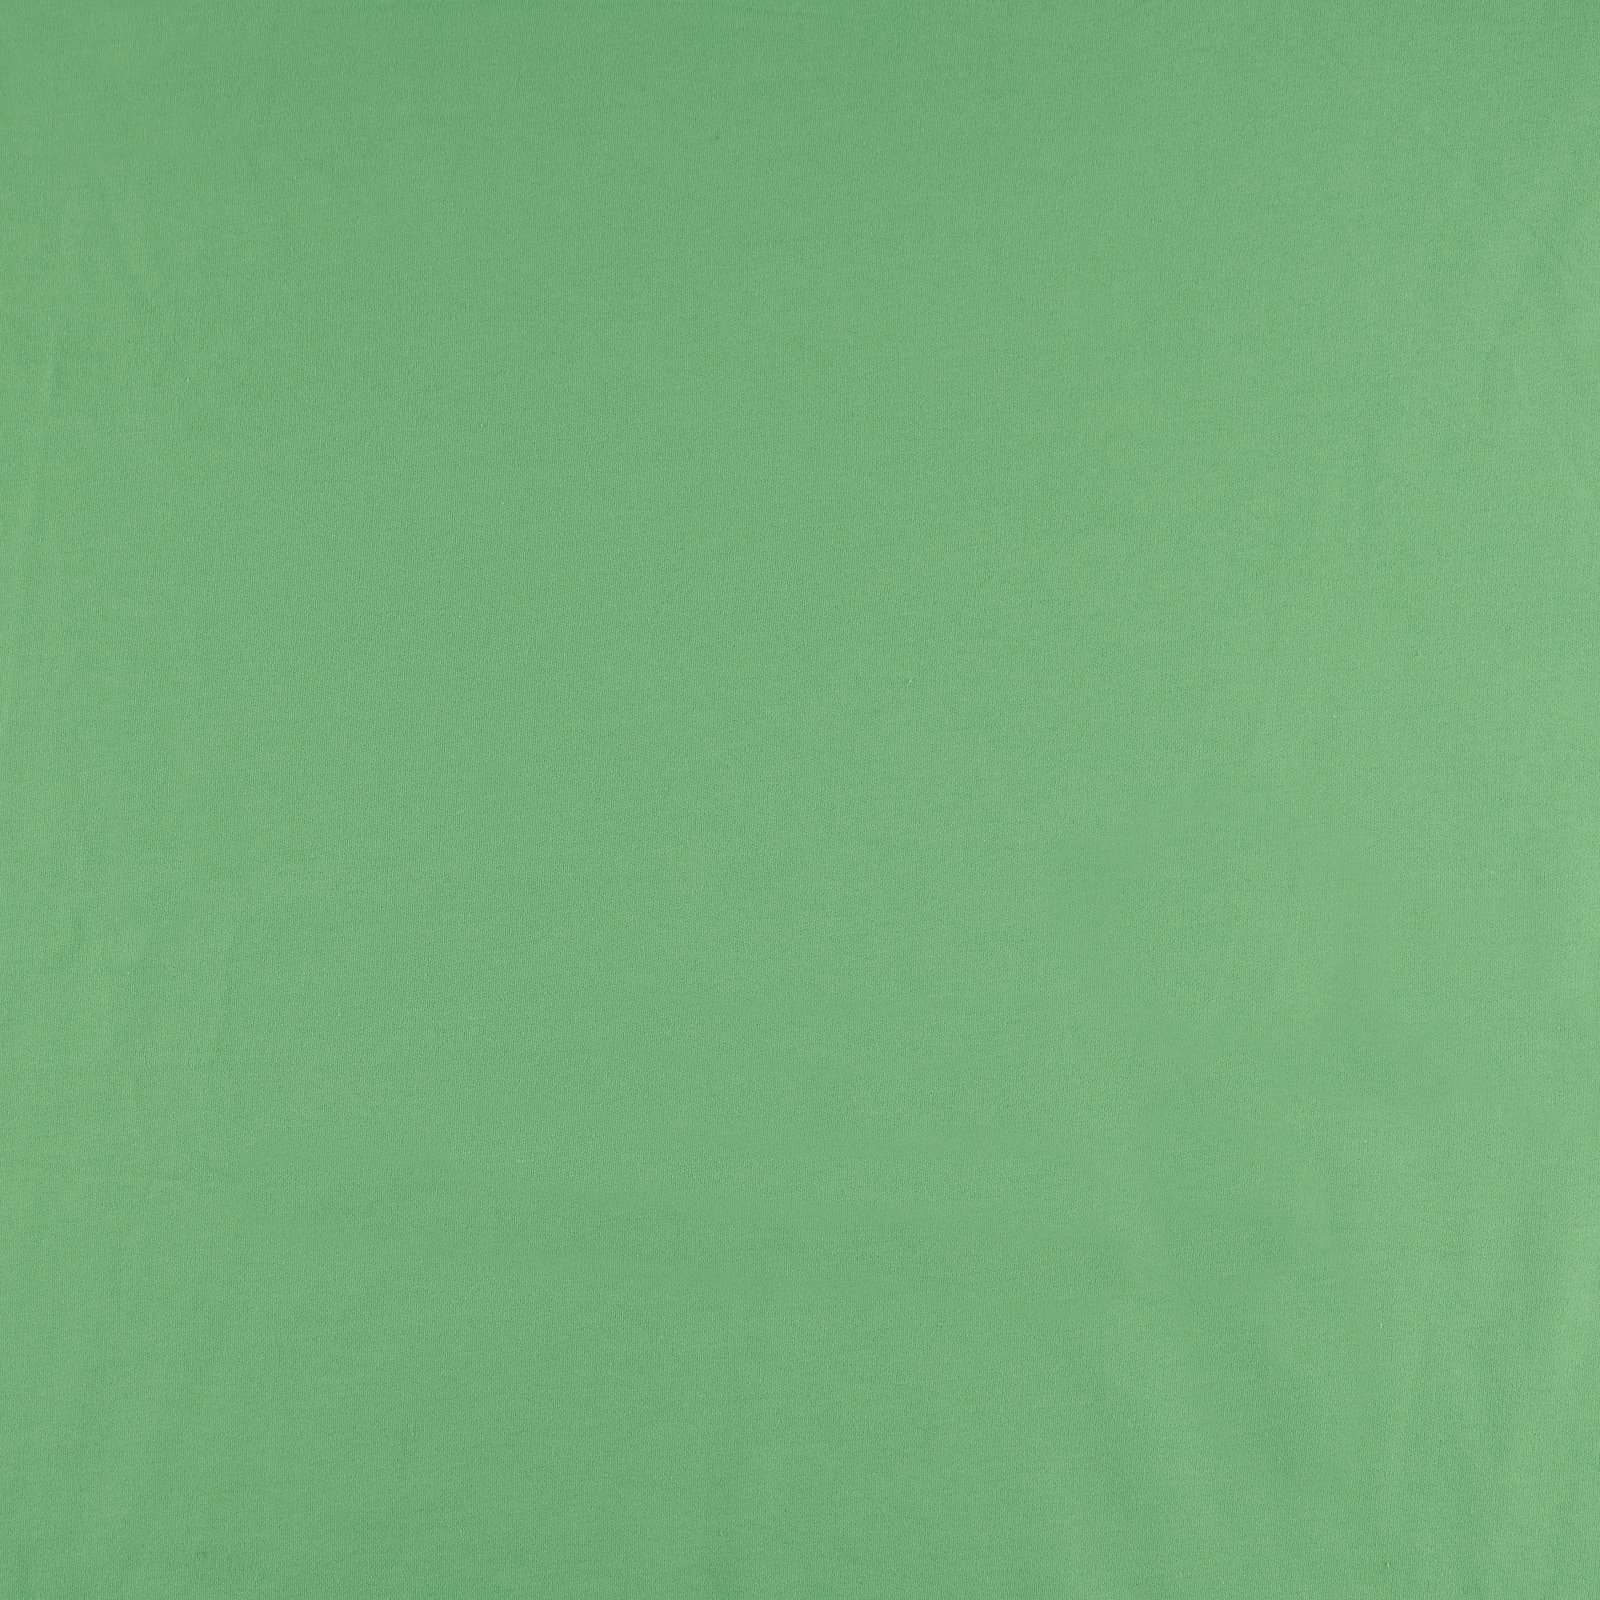 Økologisk isoli, 100% bomull, klar lys grønn, børstet 211854_pack_solid